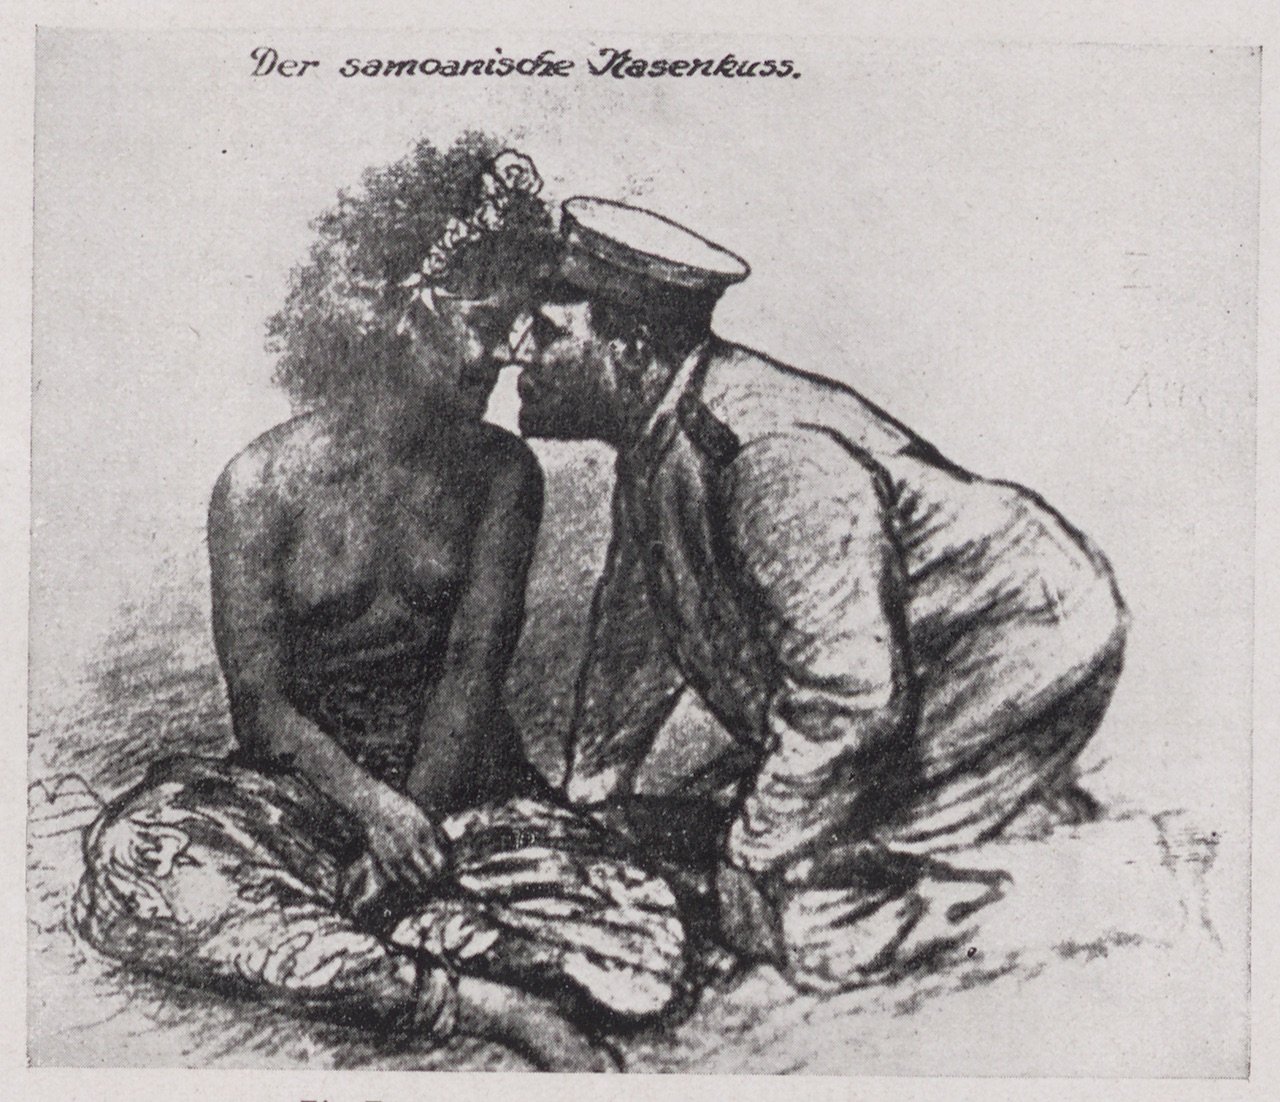 Fotografie einer Zeichnung, die ein Begrüßungsritual darstellt (Magnus-Hirschfeld-Gesellschaft Public Domain Mark)